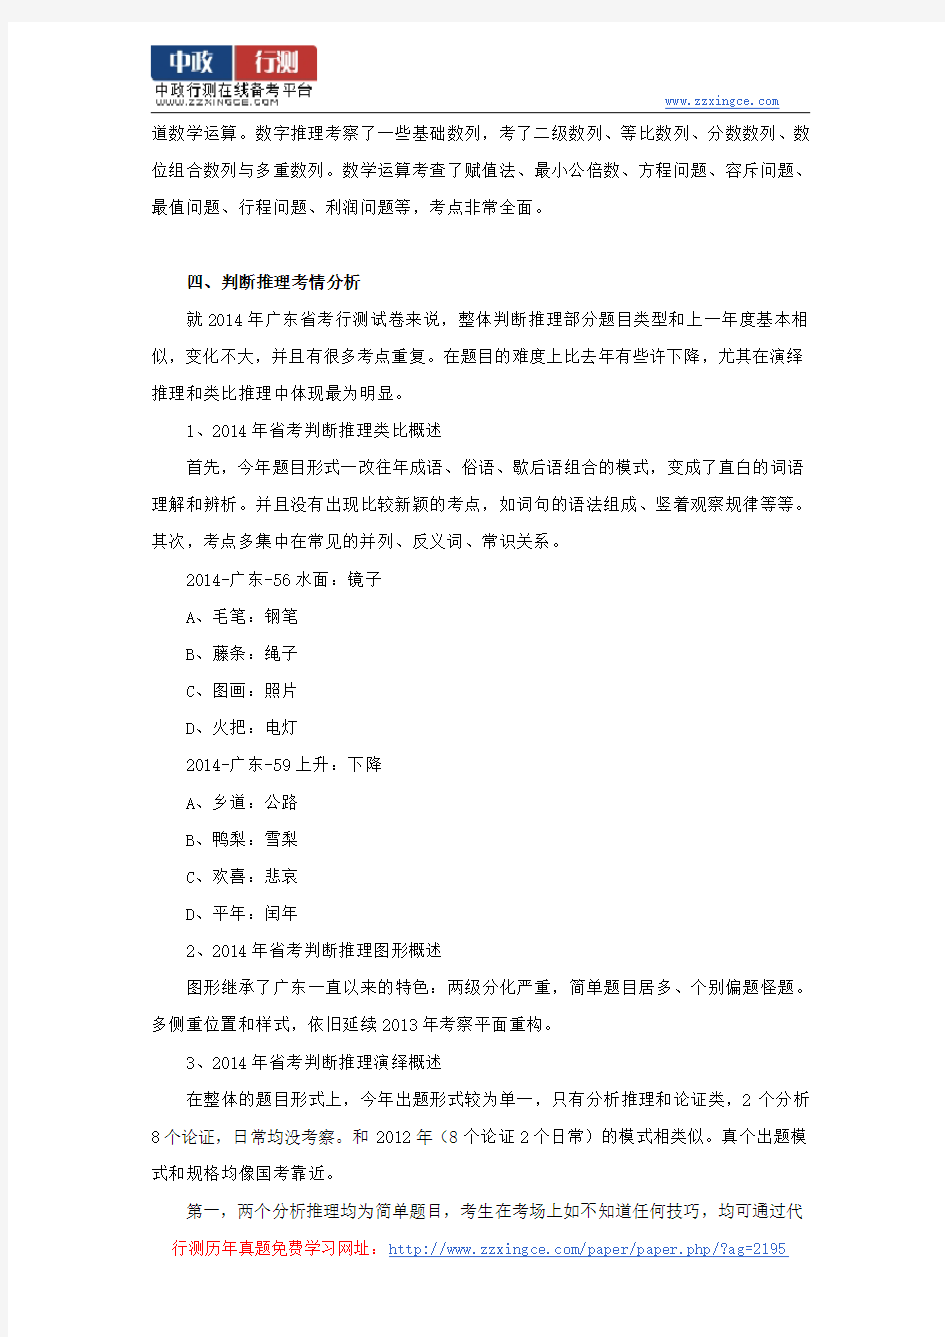 2015年广东省公务员考试行测分值分布